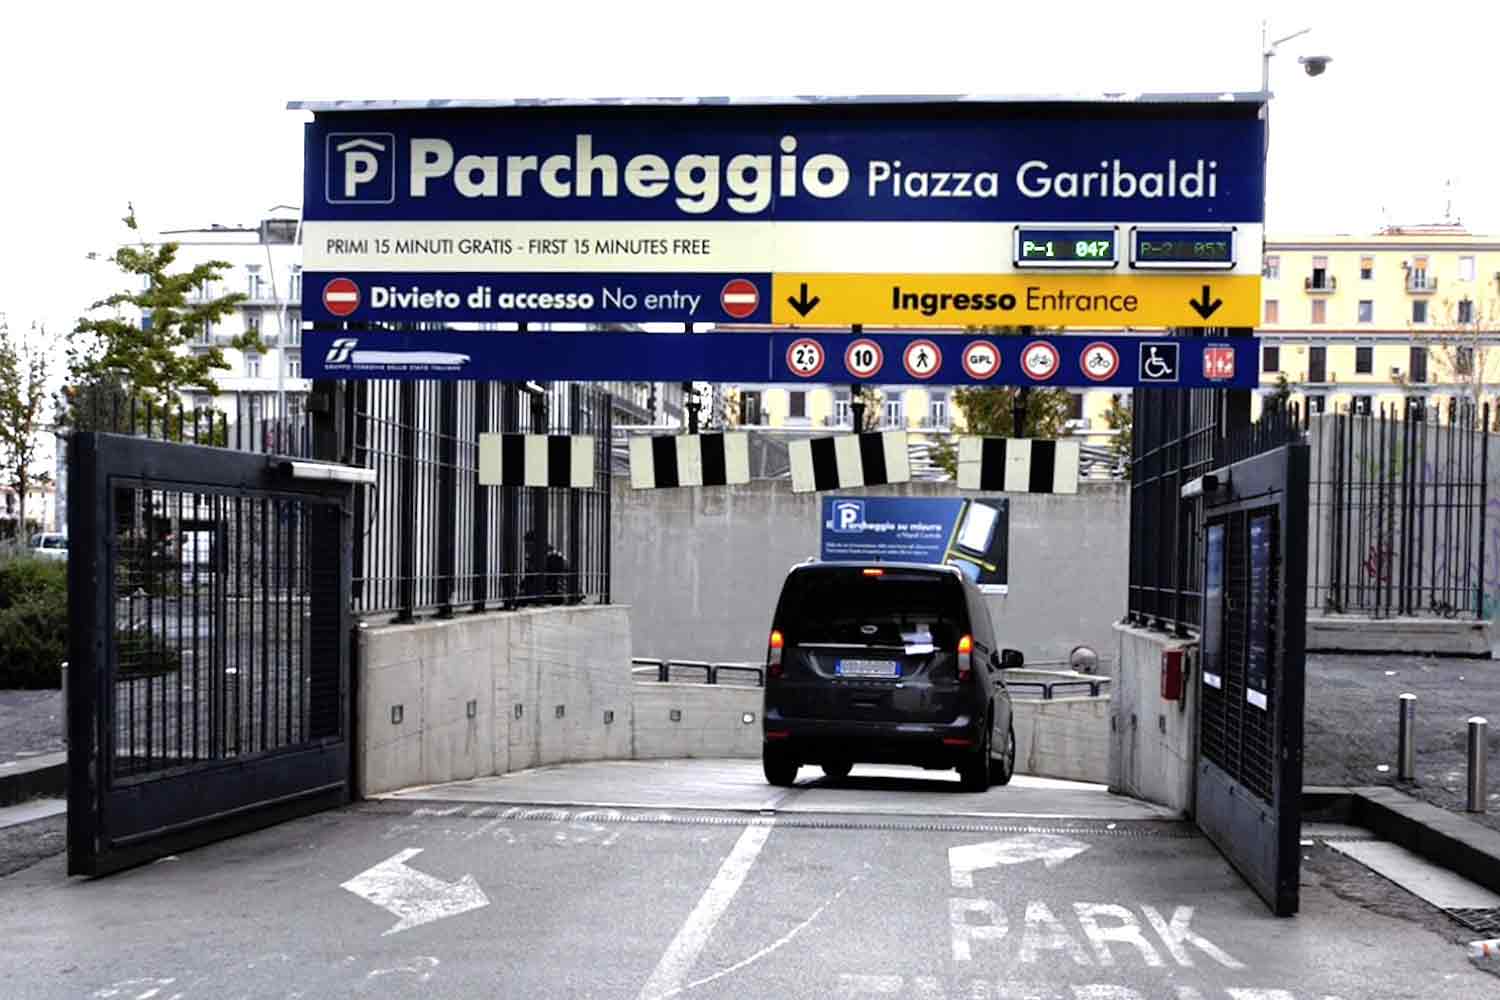 Parcheggio Piazza Garibaldi Napoli